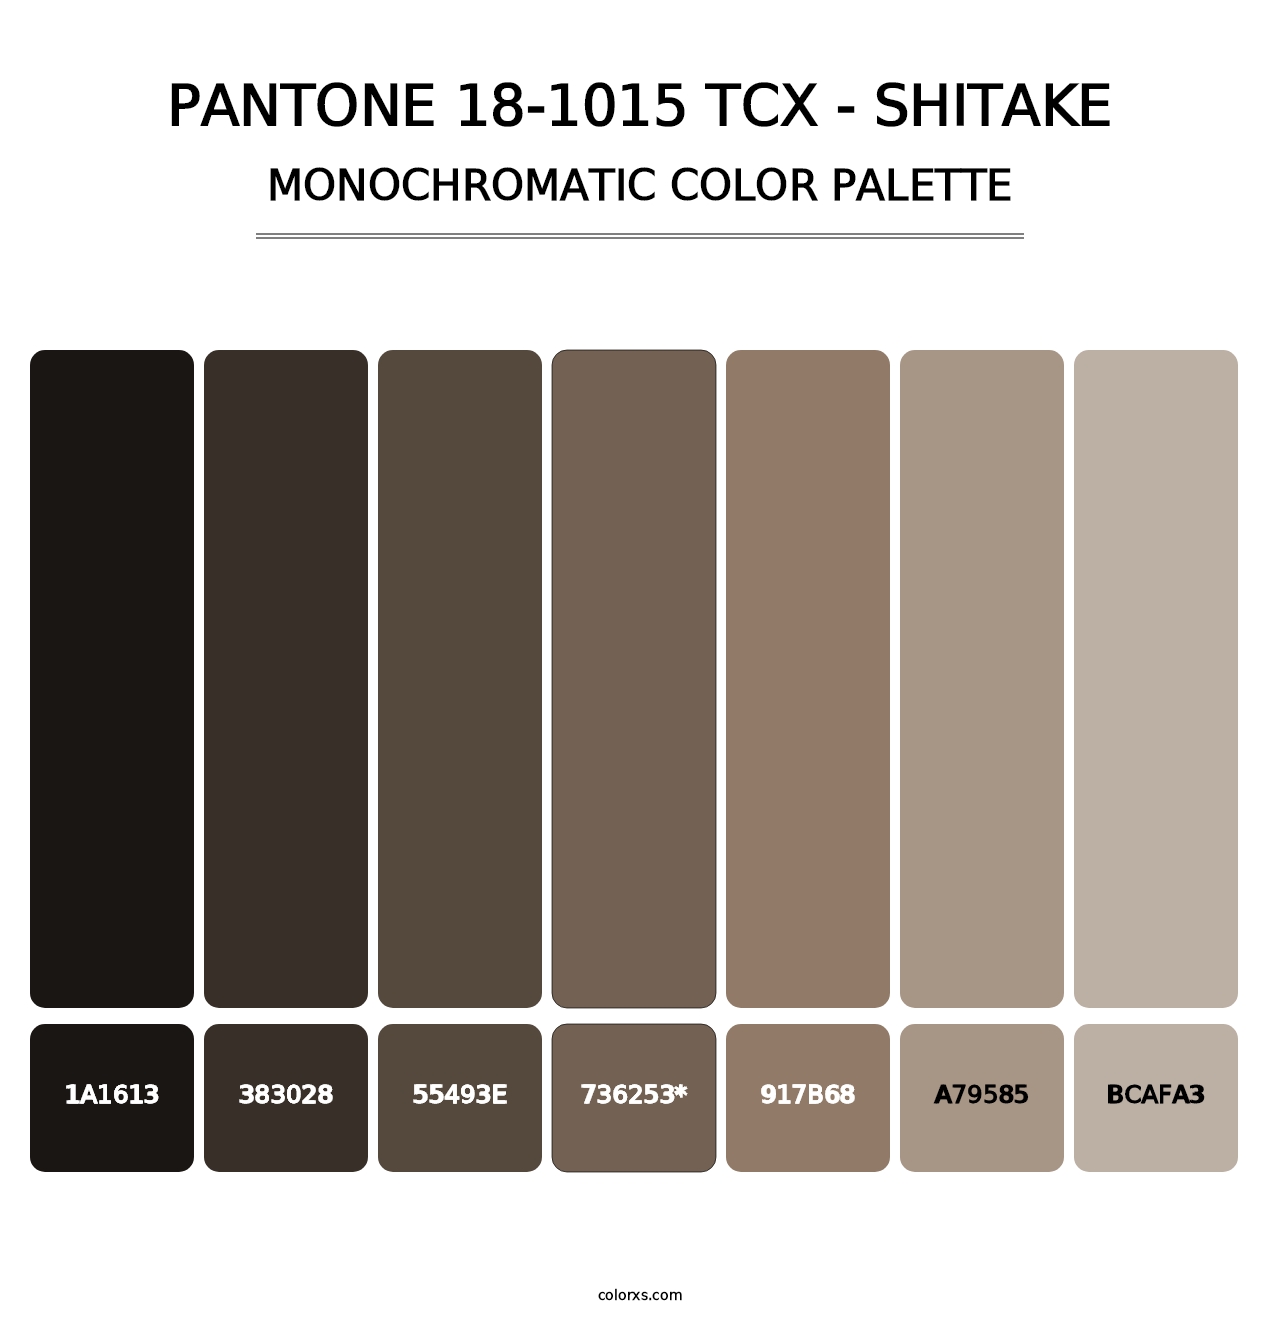 PANTONE 18-1015 TCX - Shitake - Monochromatic Color Palette